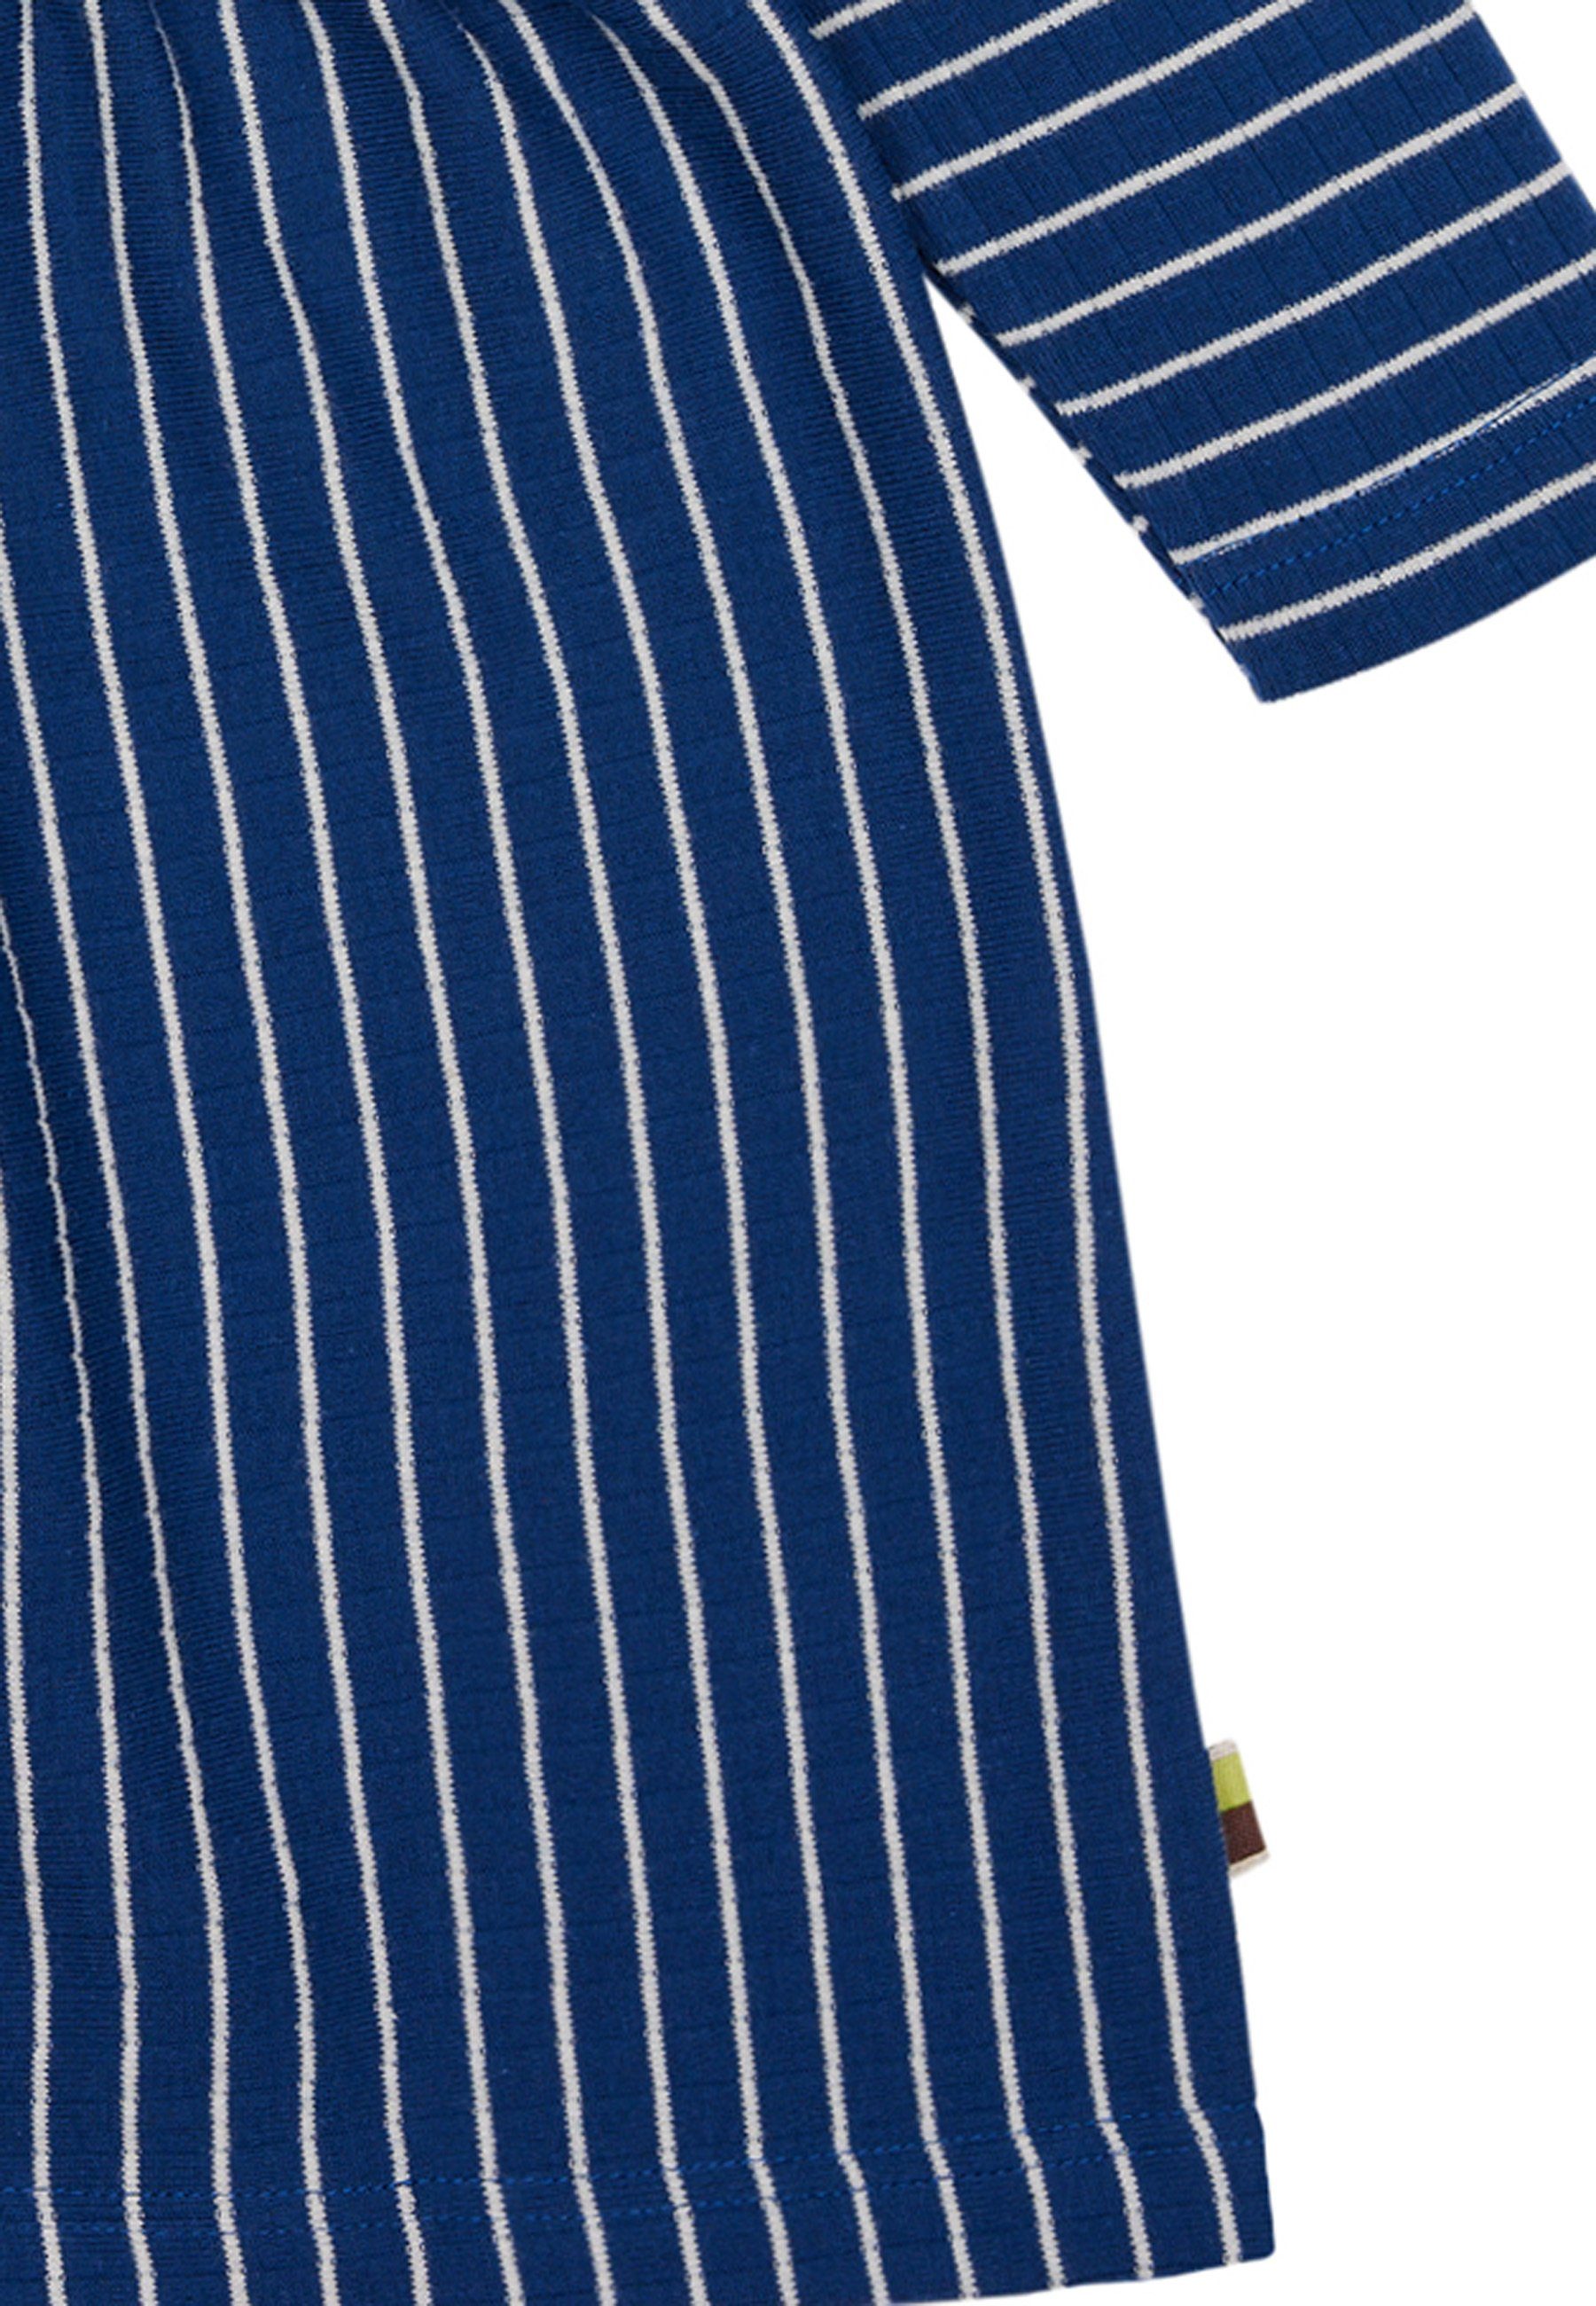 zertifizierte Bio-Baumwolle GOTS loud Ringel-Look proud mit A-Linien-Kleid + Ultramarine